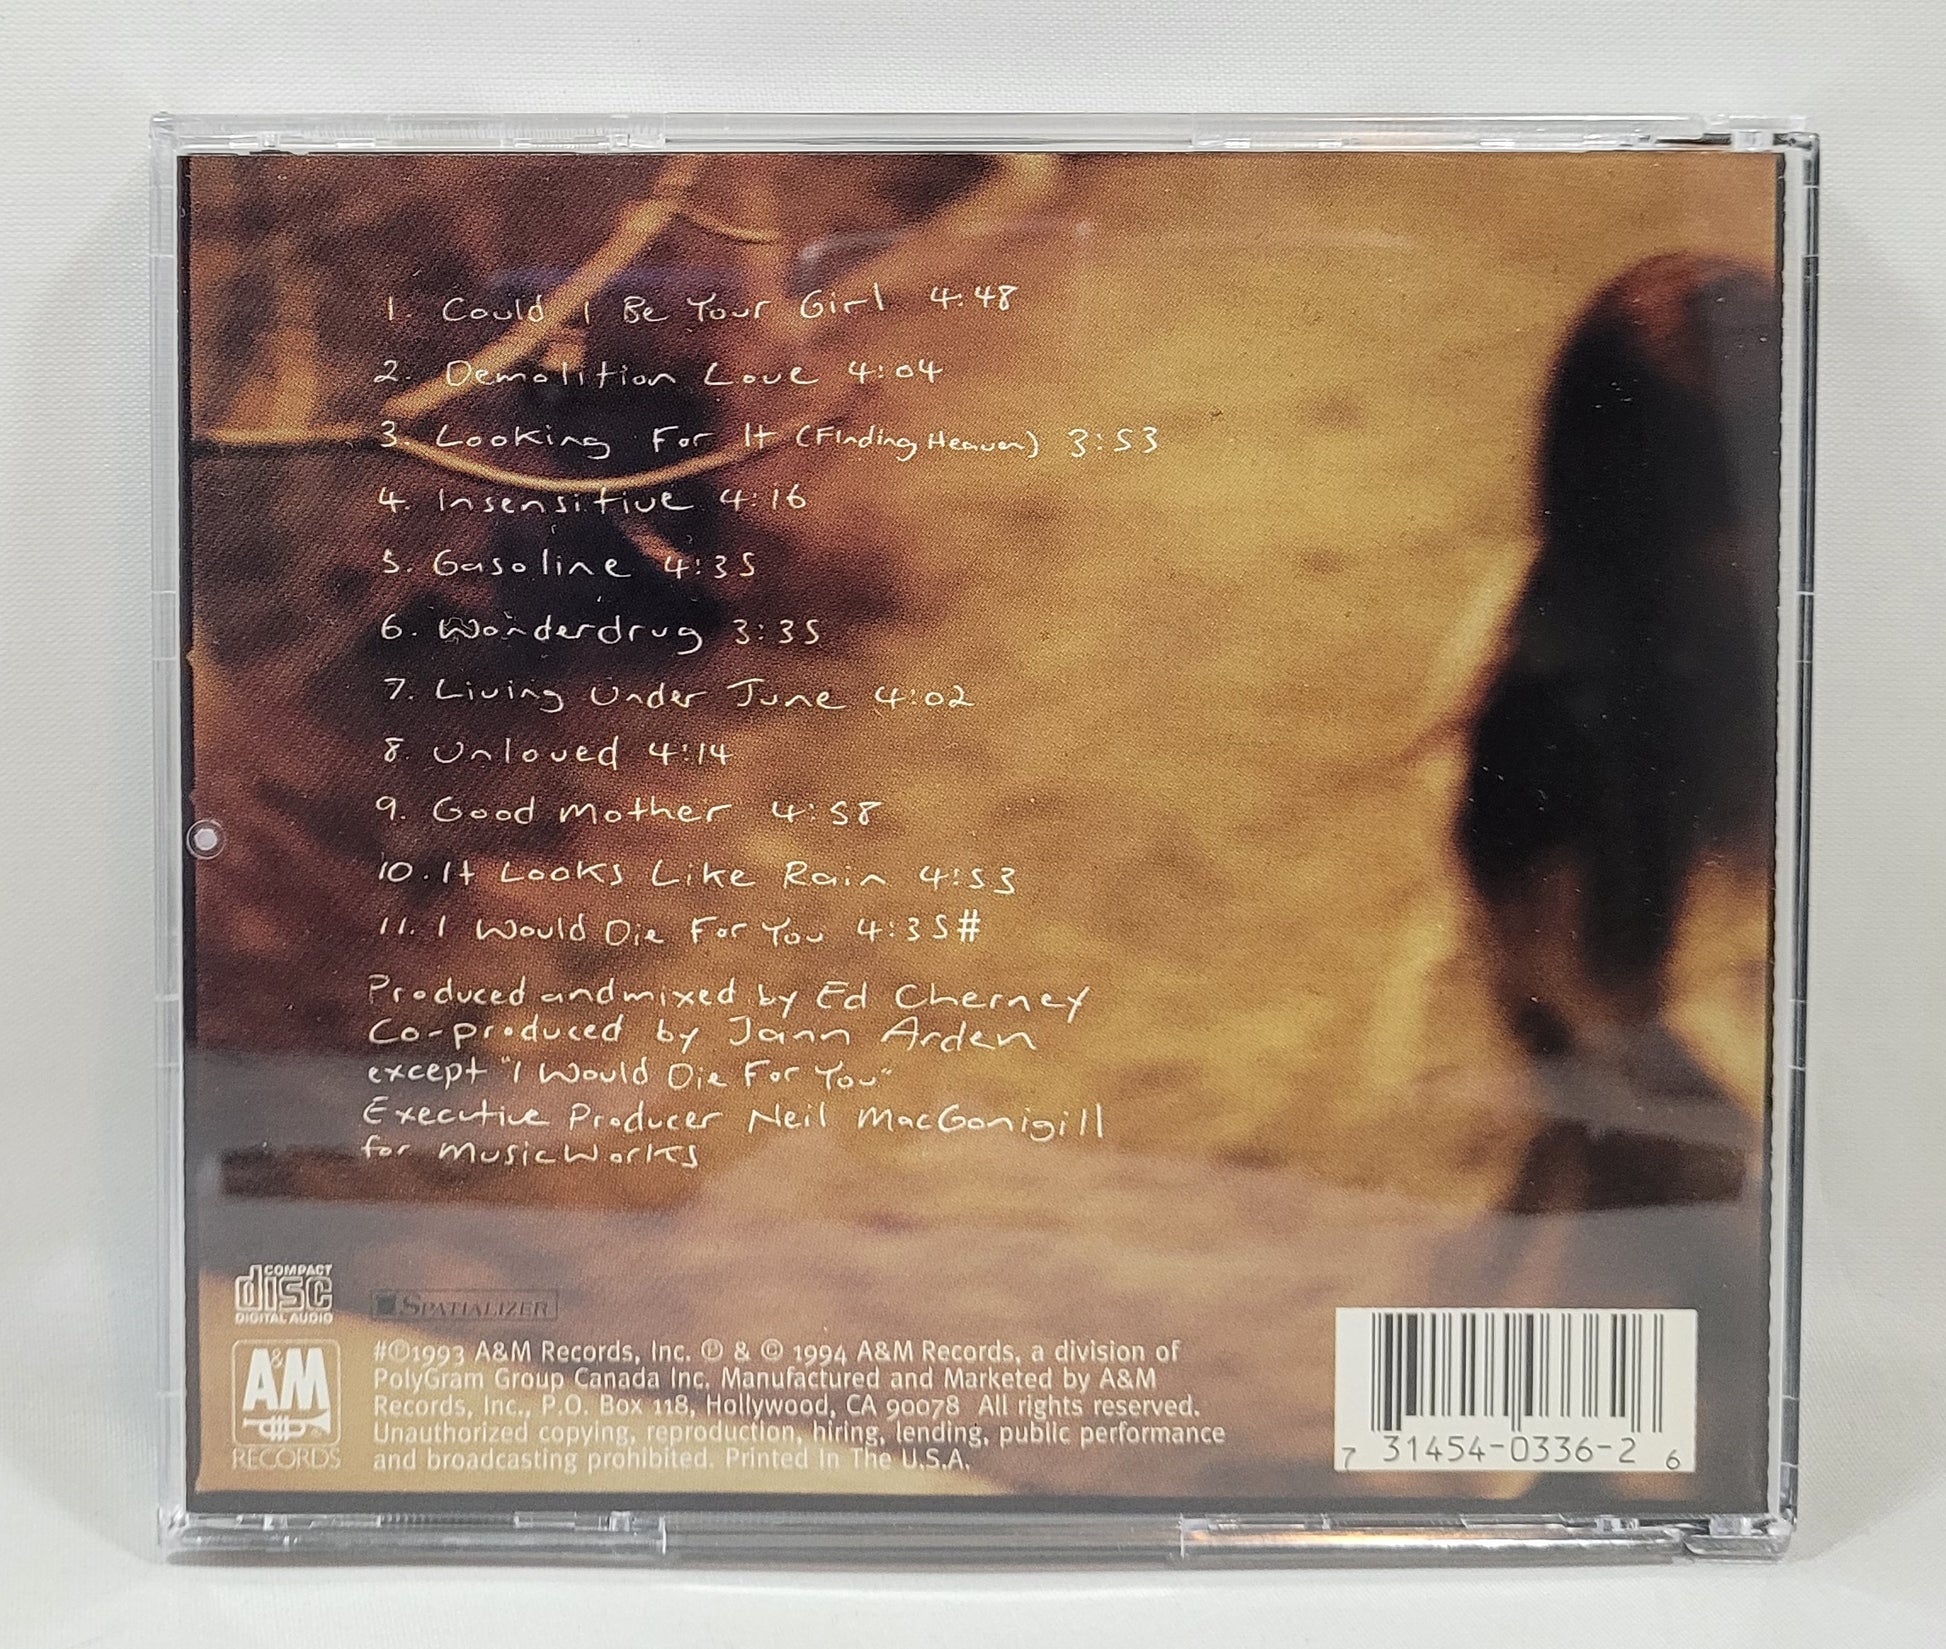 Jann Arden - Living Under June [1994 Used CD] [B]